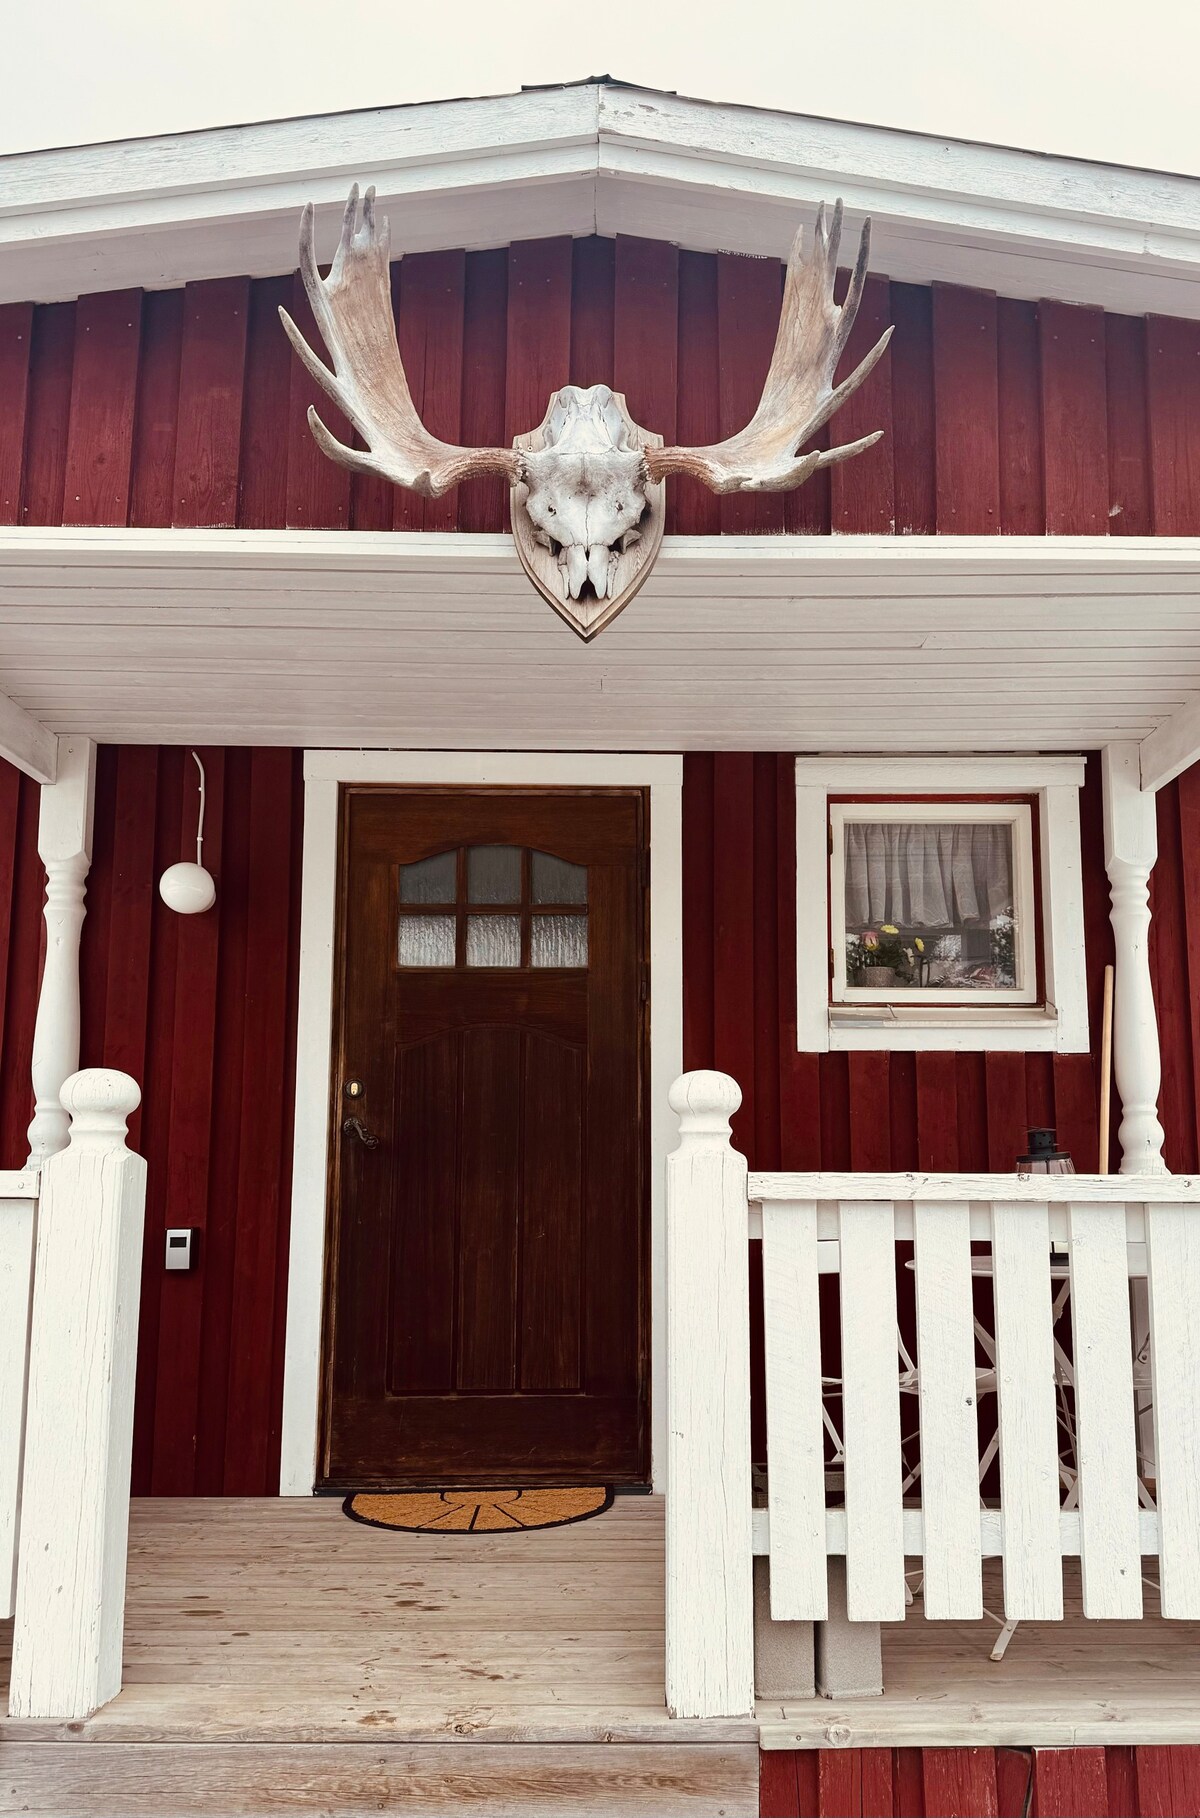 Ferienhaus in der Natur bei Arvidsjaur in Lappland